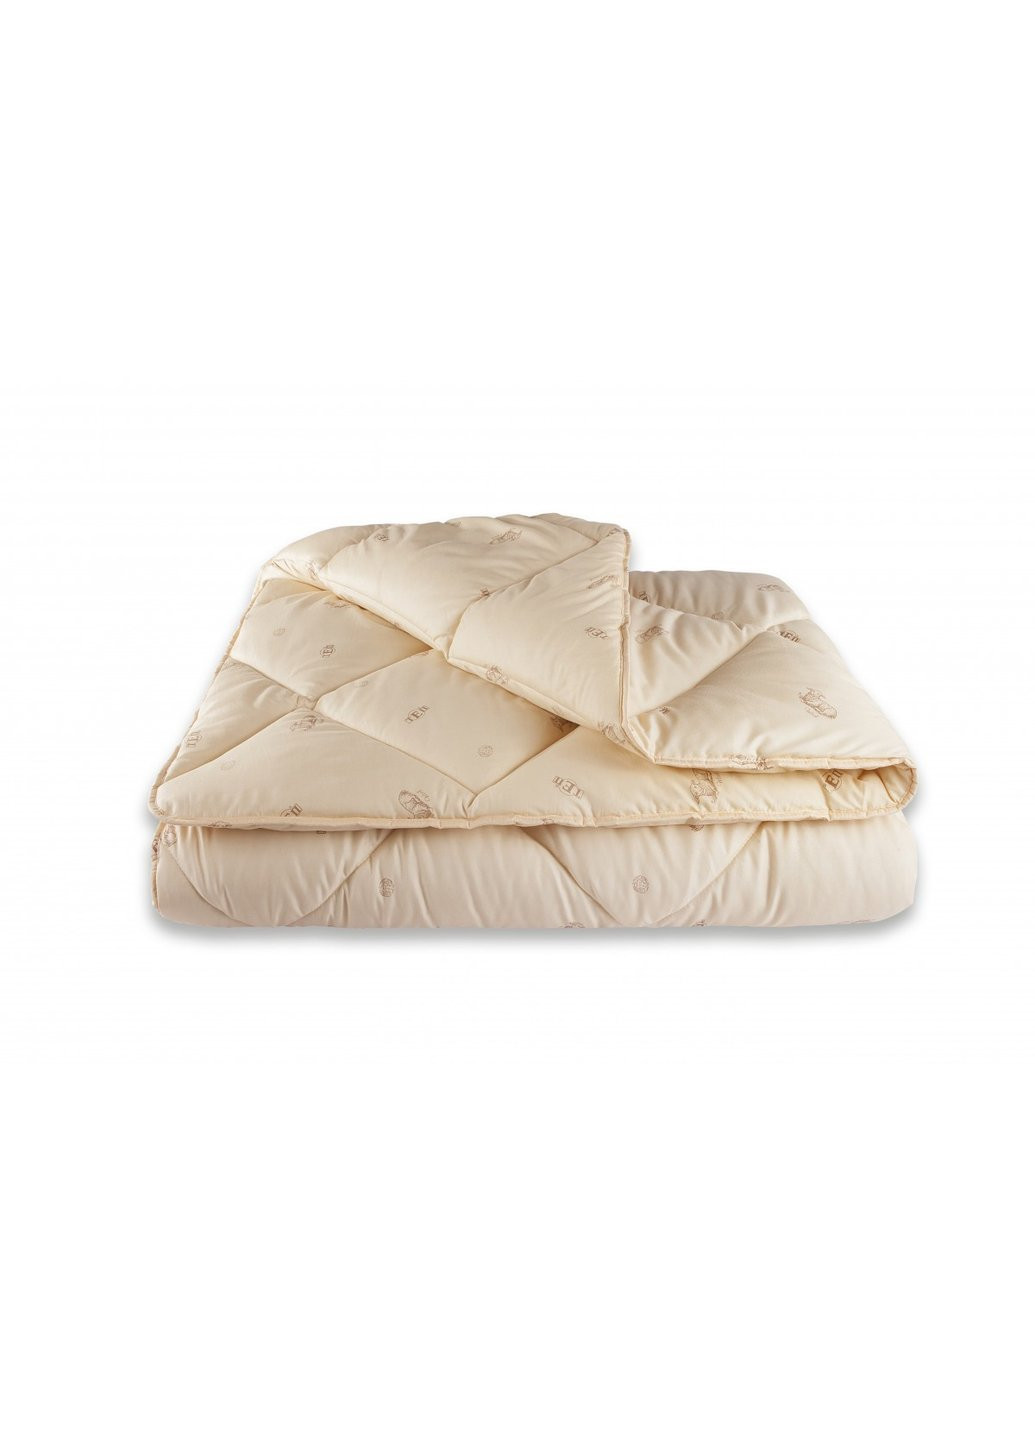 Одеяло односпальное Dream Collection Wool 1-02556-00000 210х140 см ТЕП (254782556)